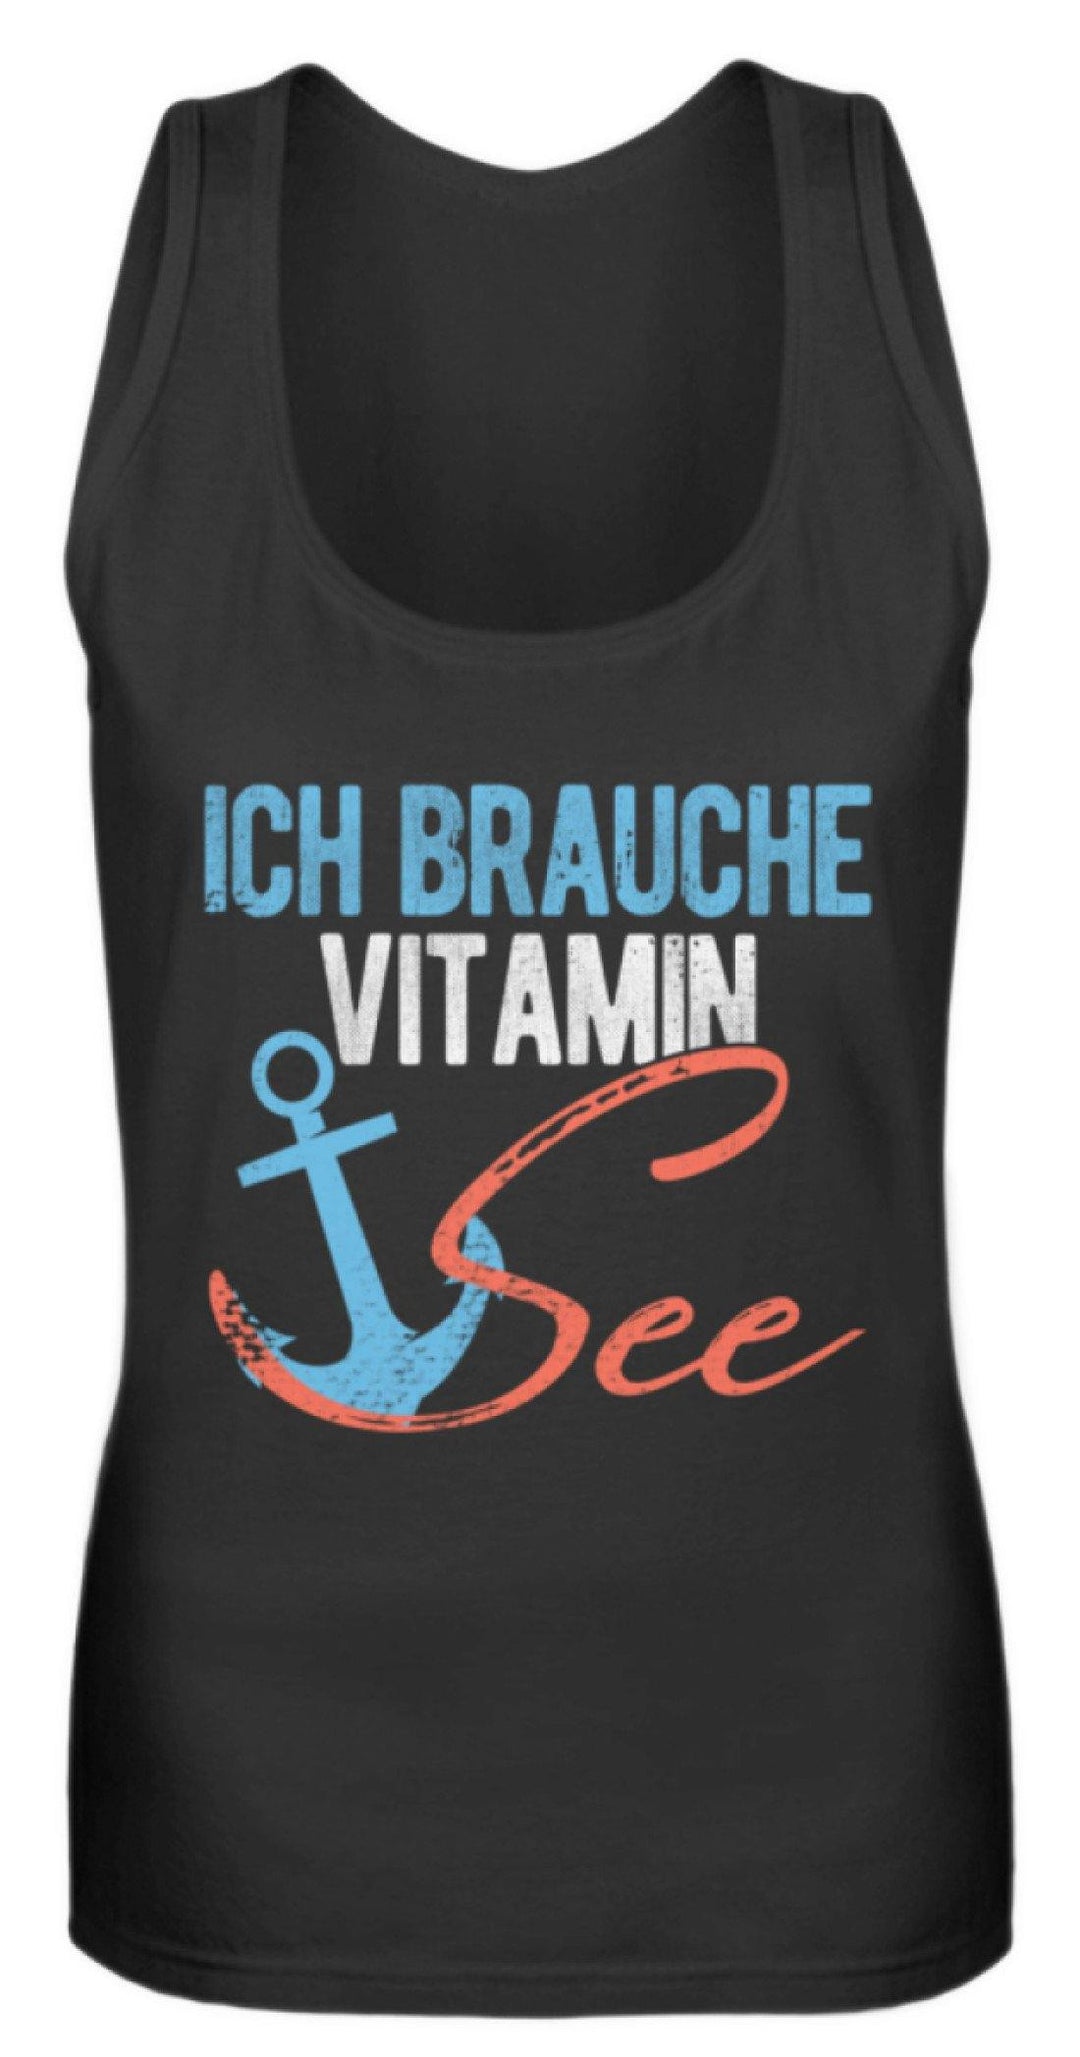 Vitamin See - Norddeutsch   - Frauen Tanktop - Words on Shirts Sag es mit dem Mittelfinger Shirts Hoodies Sweatshirt Taschen Gymsack Spruch Sprüche Statement